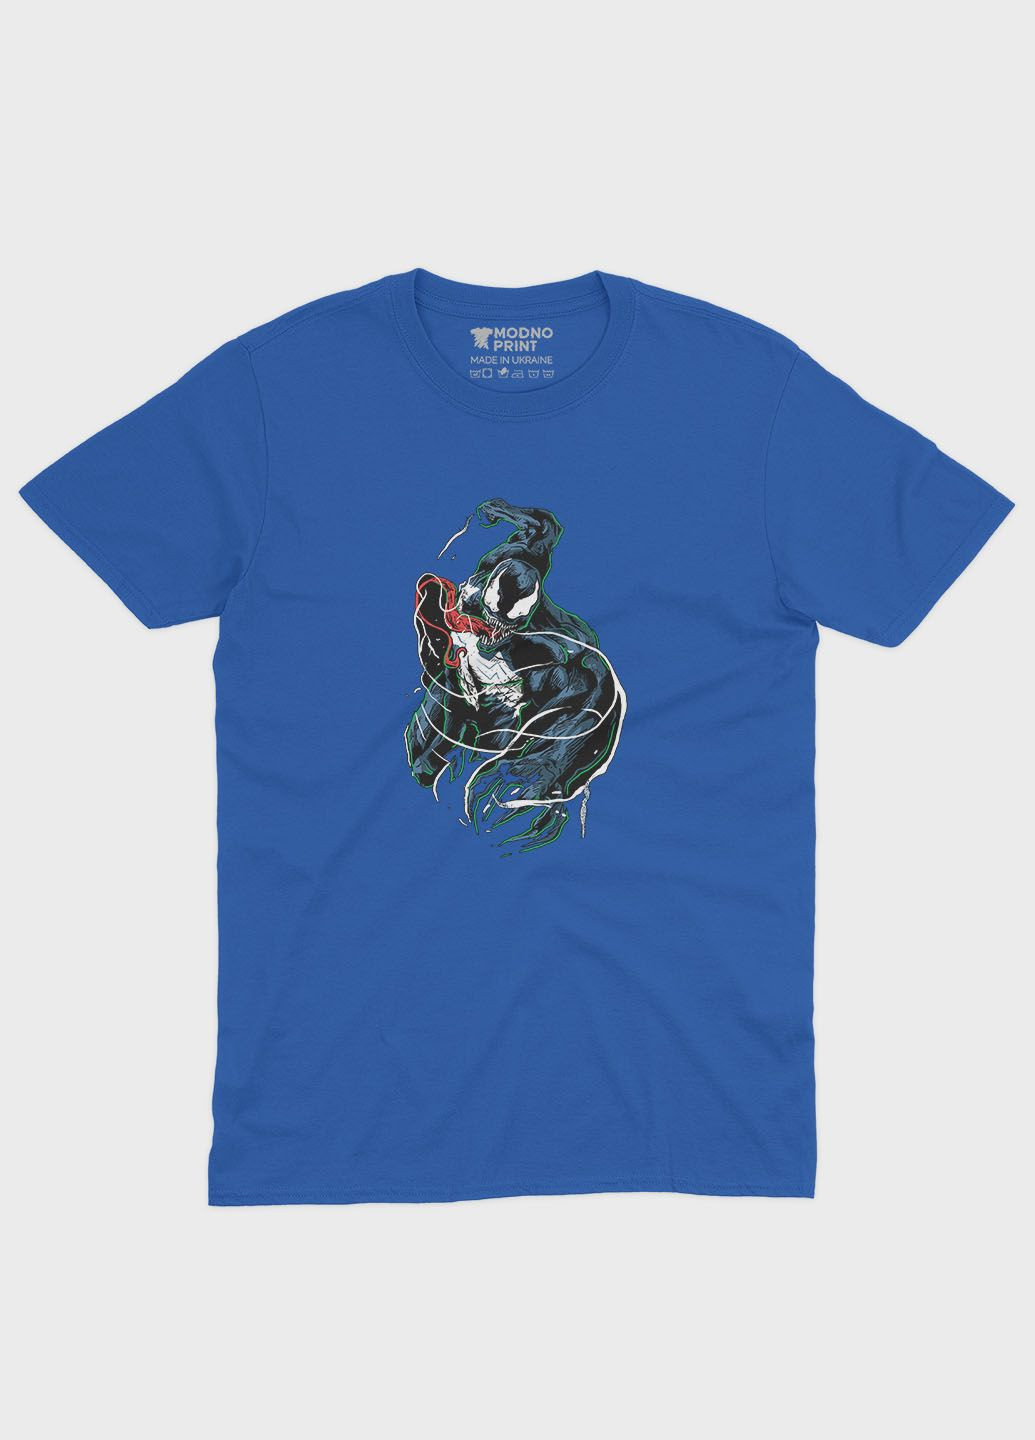 Синя демісезонна футболка для хлопчика з принтом суперзлодія - веном (ts001-1-brr-006-013-005-b) Modno